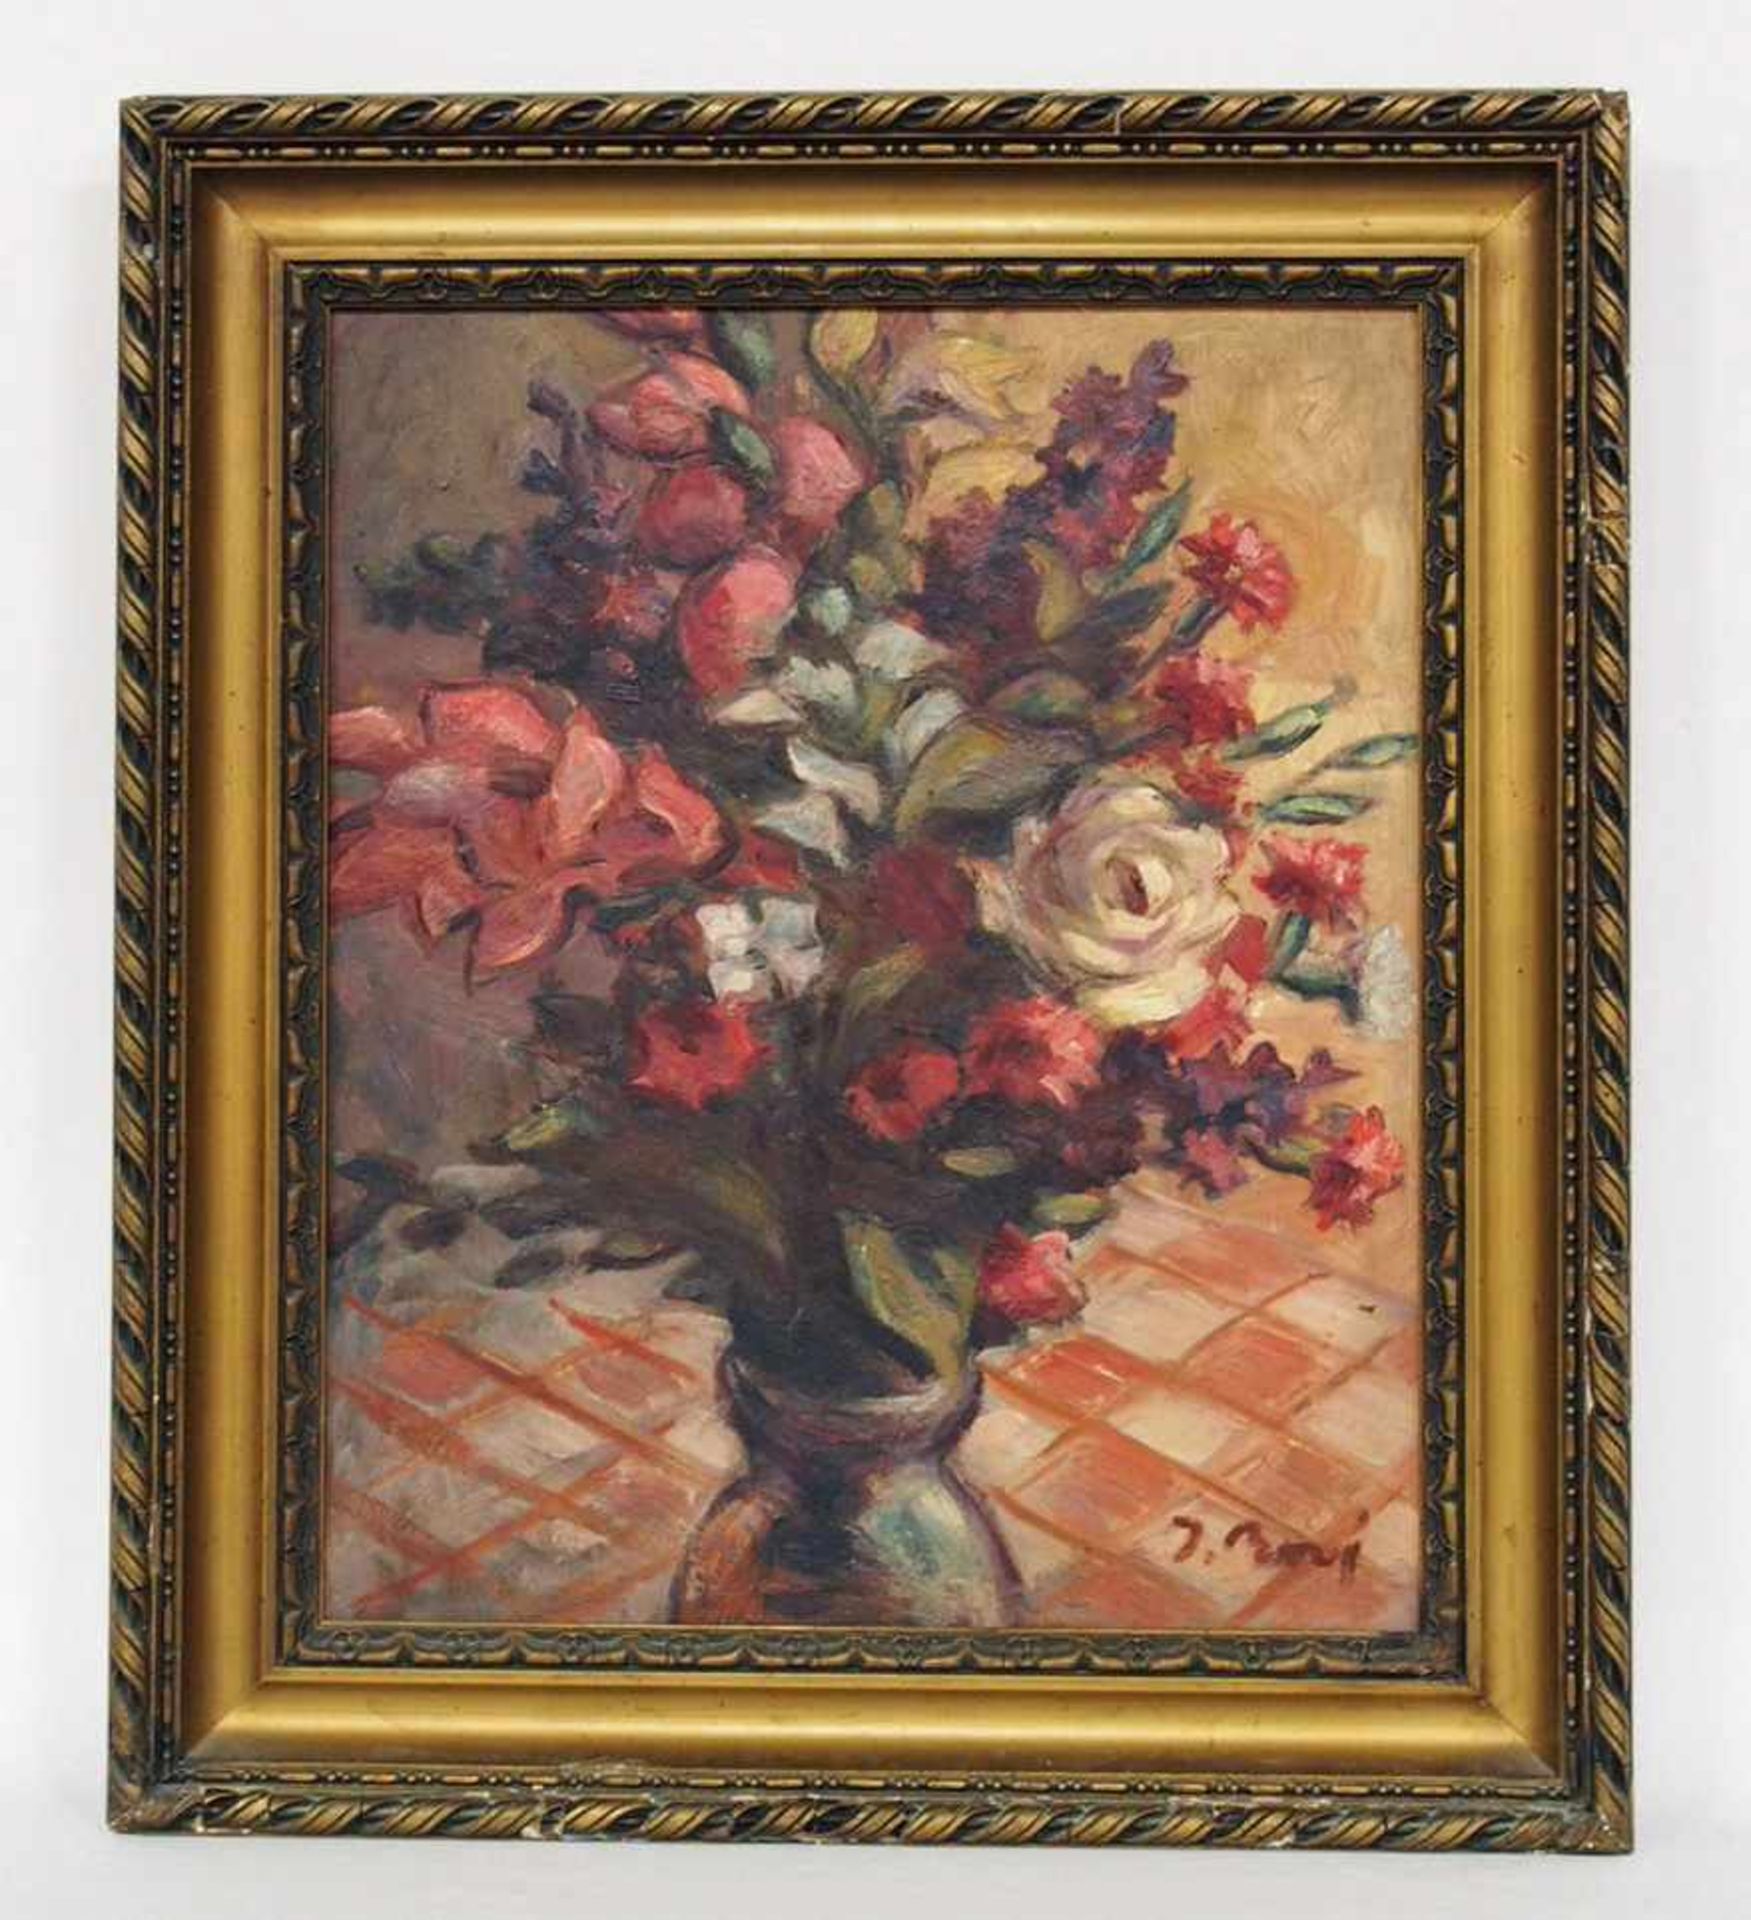 BONI, Jeanne-Louise1919-?BlumenstillebenÖl auf Holz, signiert unten rechts, 48 x 40 cm, Rahmen - Bild 2 aus 2